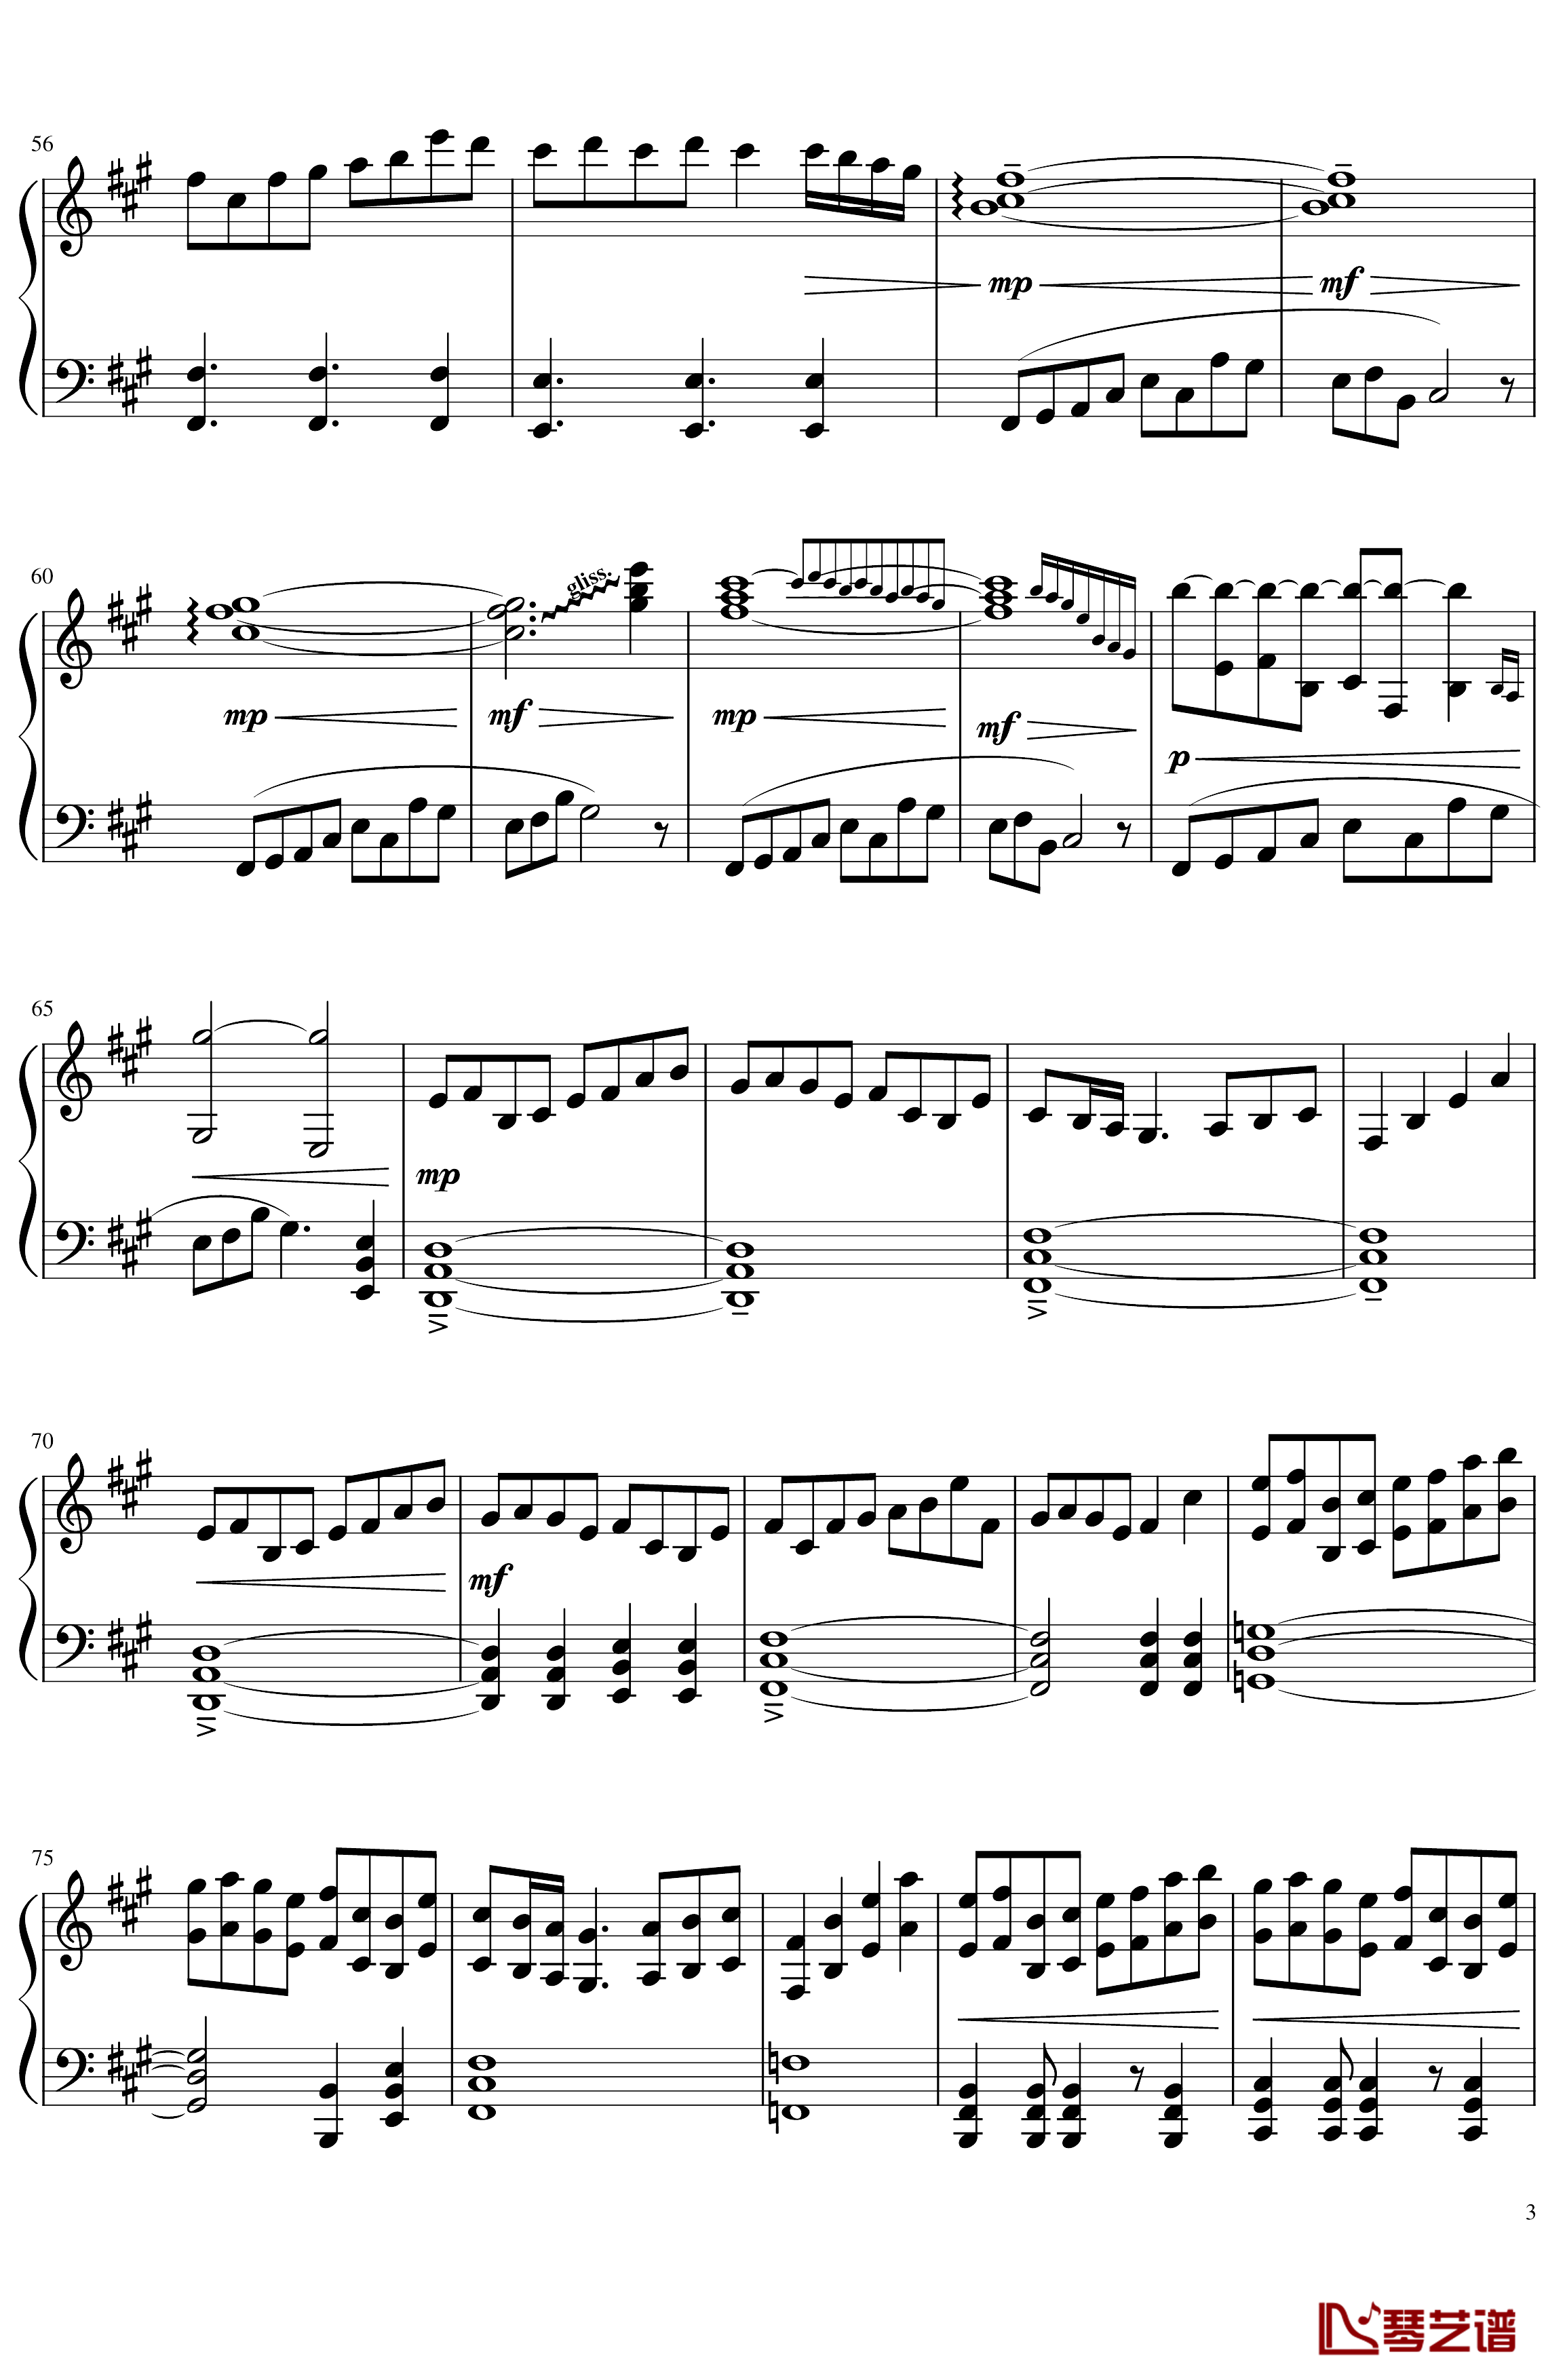 ソロモンの白椿钢琴谱-交响乐转钢琴版-碧蓝航线3